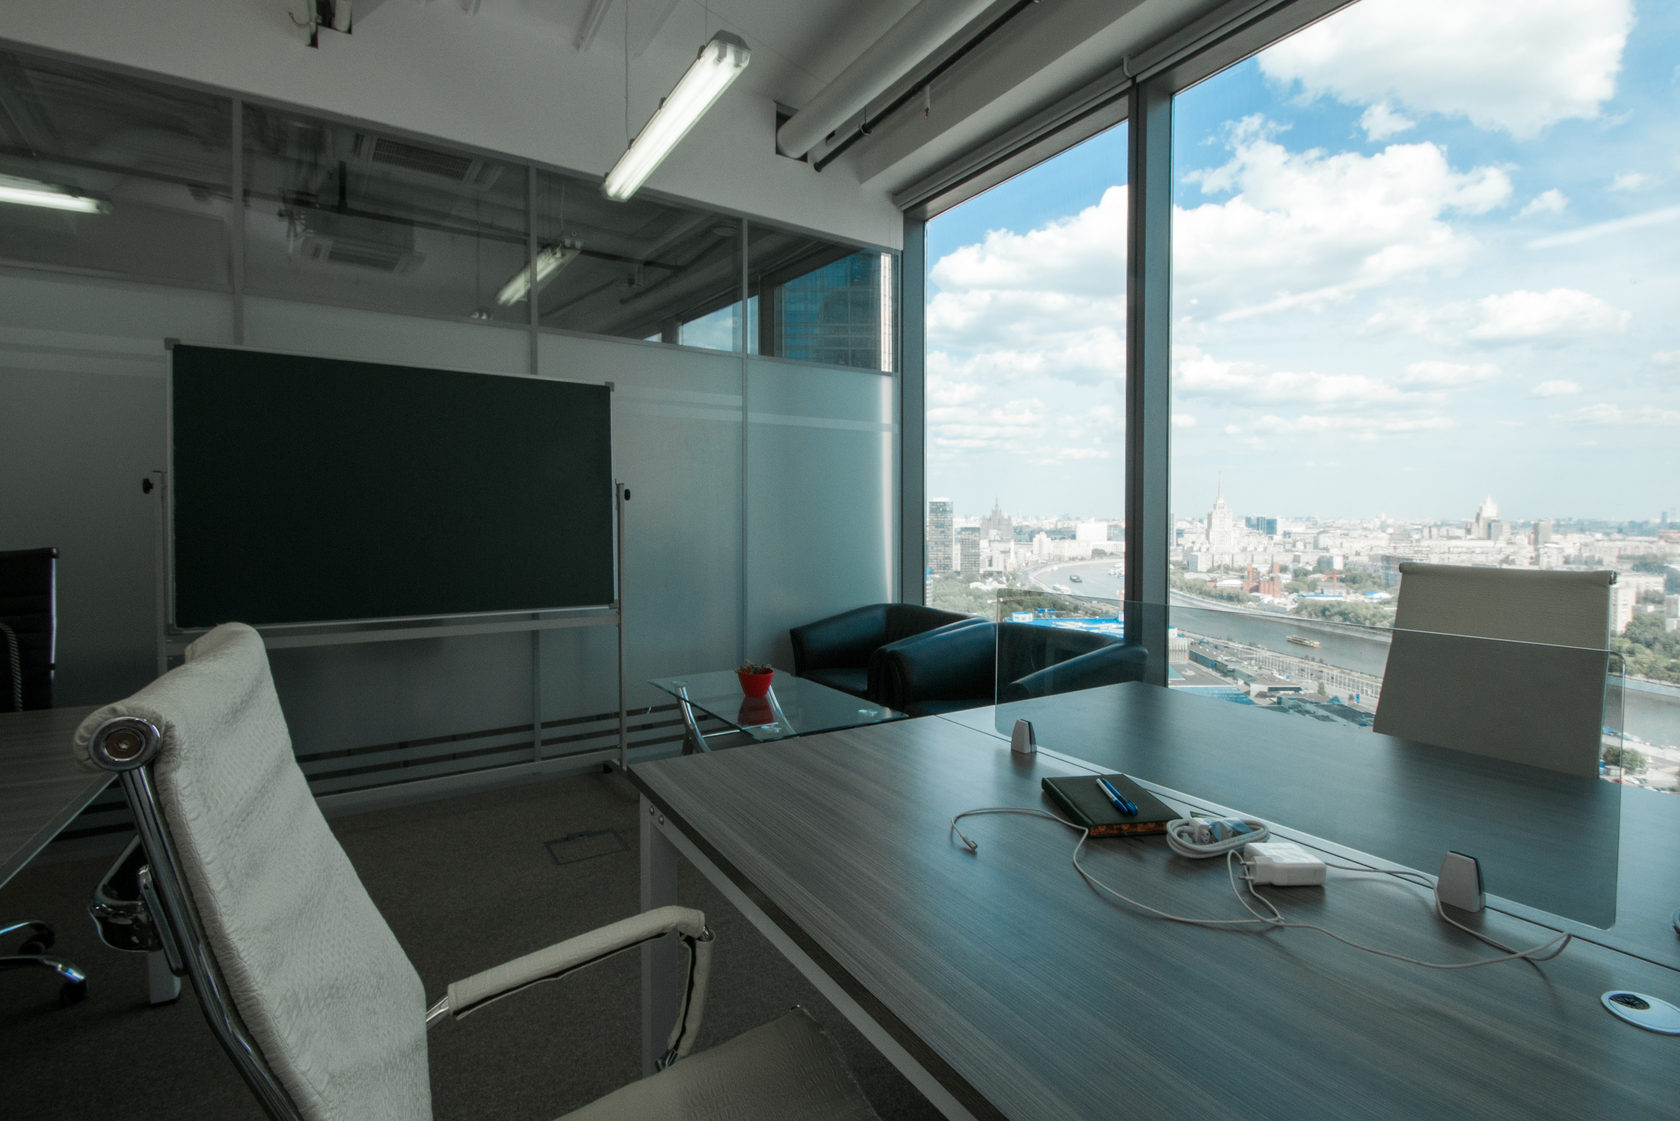 Офис в москва сити. Вид из окна офиса. Офис в Сити. Офис в Москве. Вид из окна офиса на город.